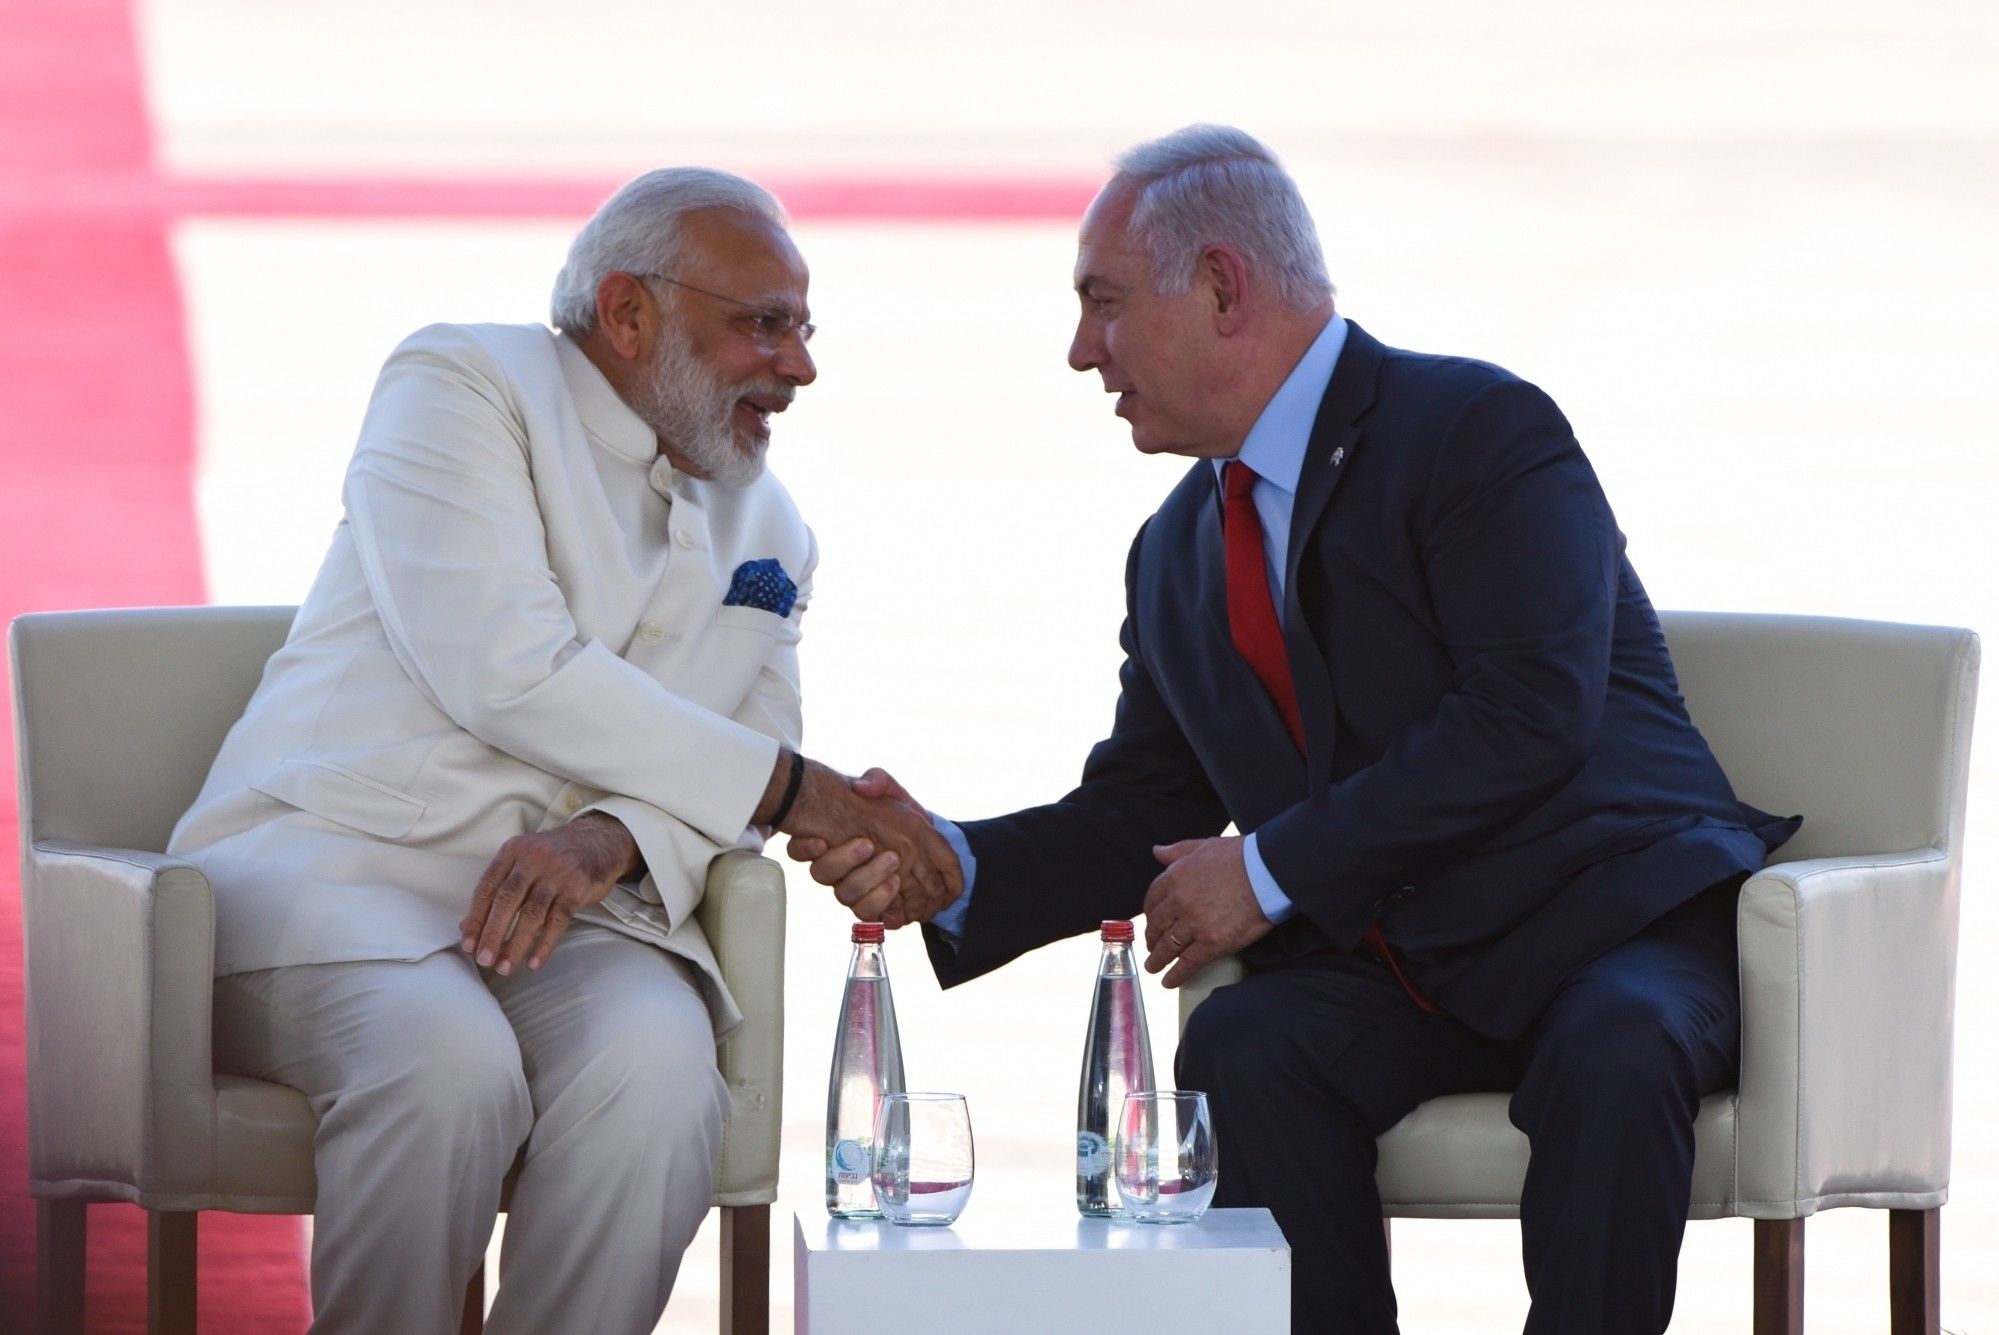 ModiInIsrael: इन पांच पॉइंट्स के जरिए जानिए इज़राइल कैसे है भारत के लिए महत्वपूर्ण